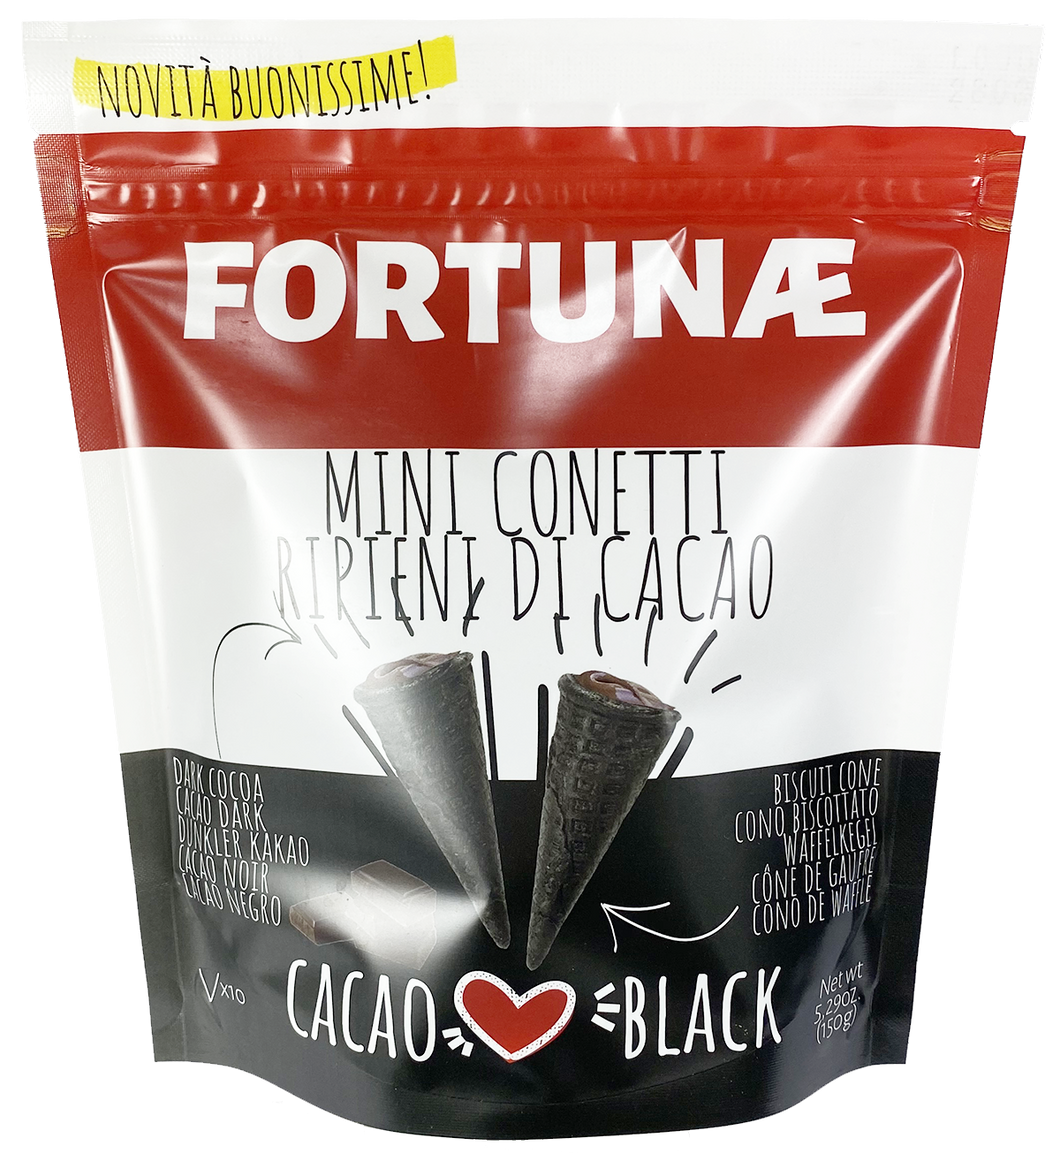 Mini Conetti Ripieni al Cacao Fondente Black Edition - FORTUNAE